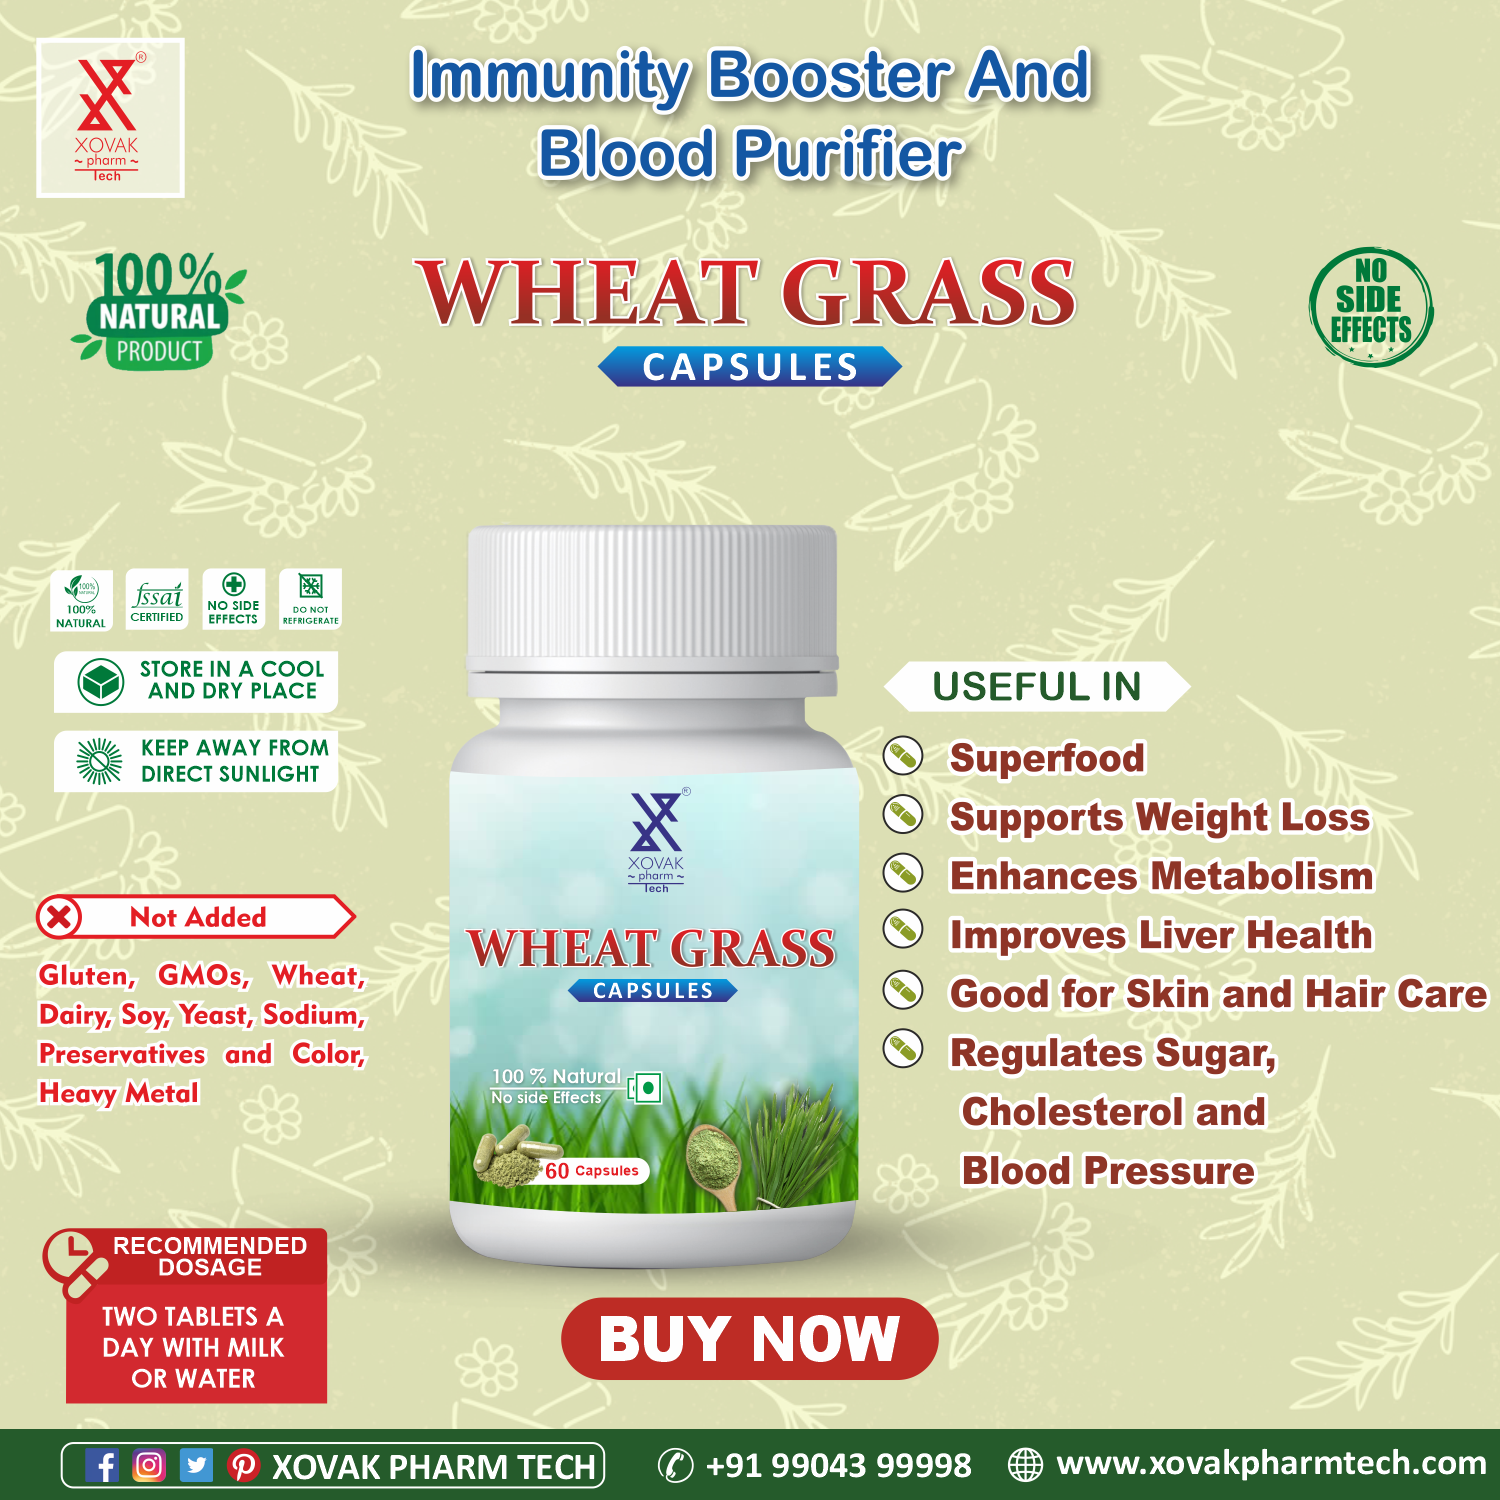 Buy Xovak Organic Wheat Grass Capsules (60caps) at Best Price Online